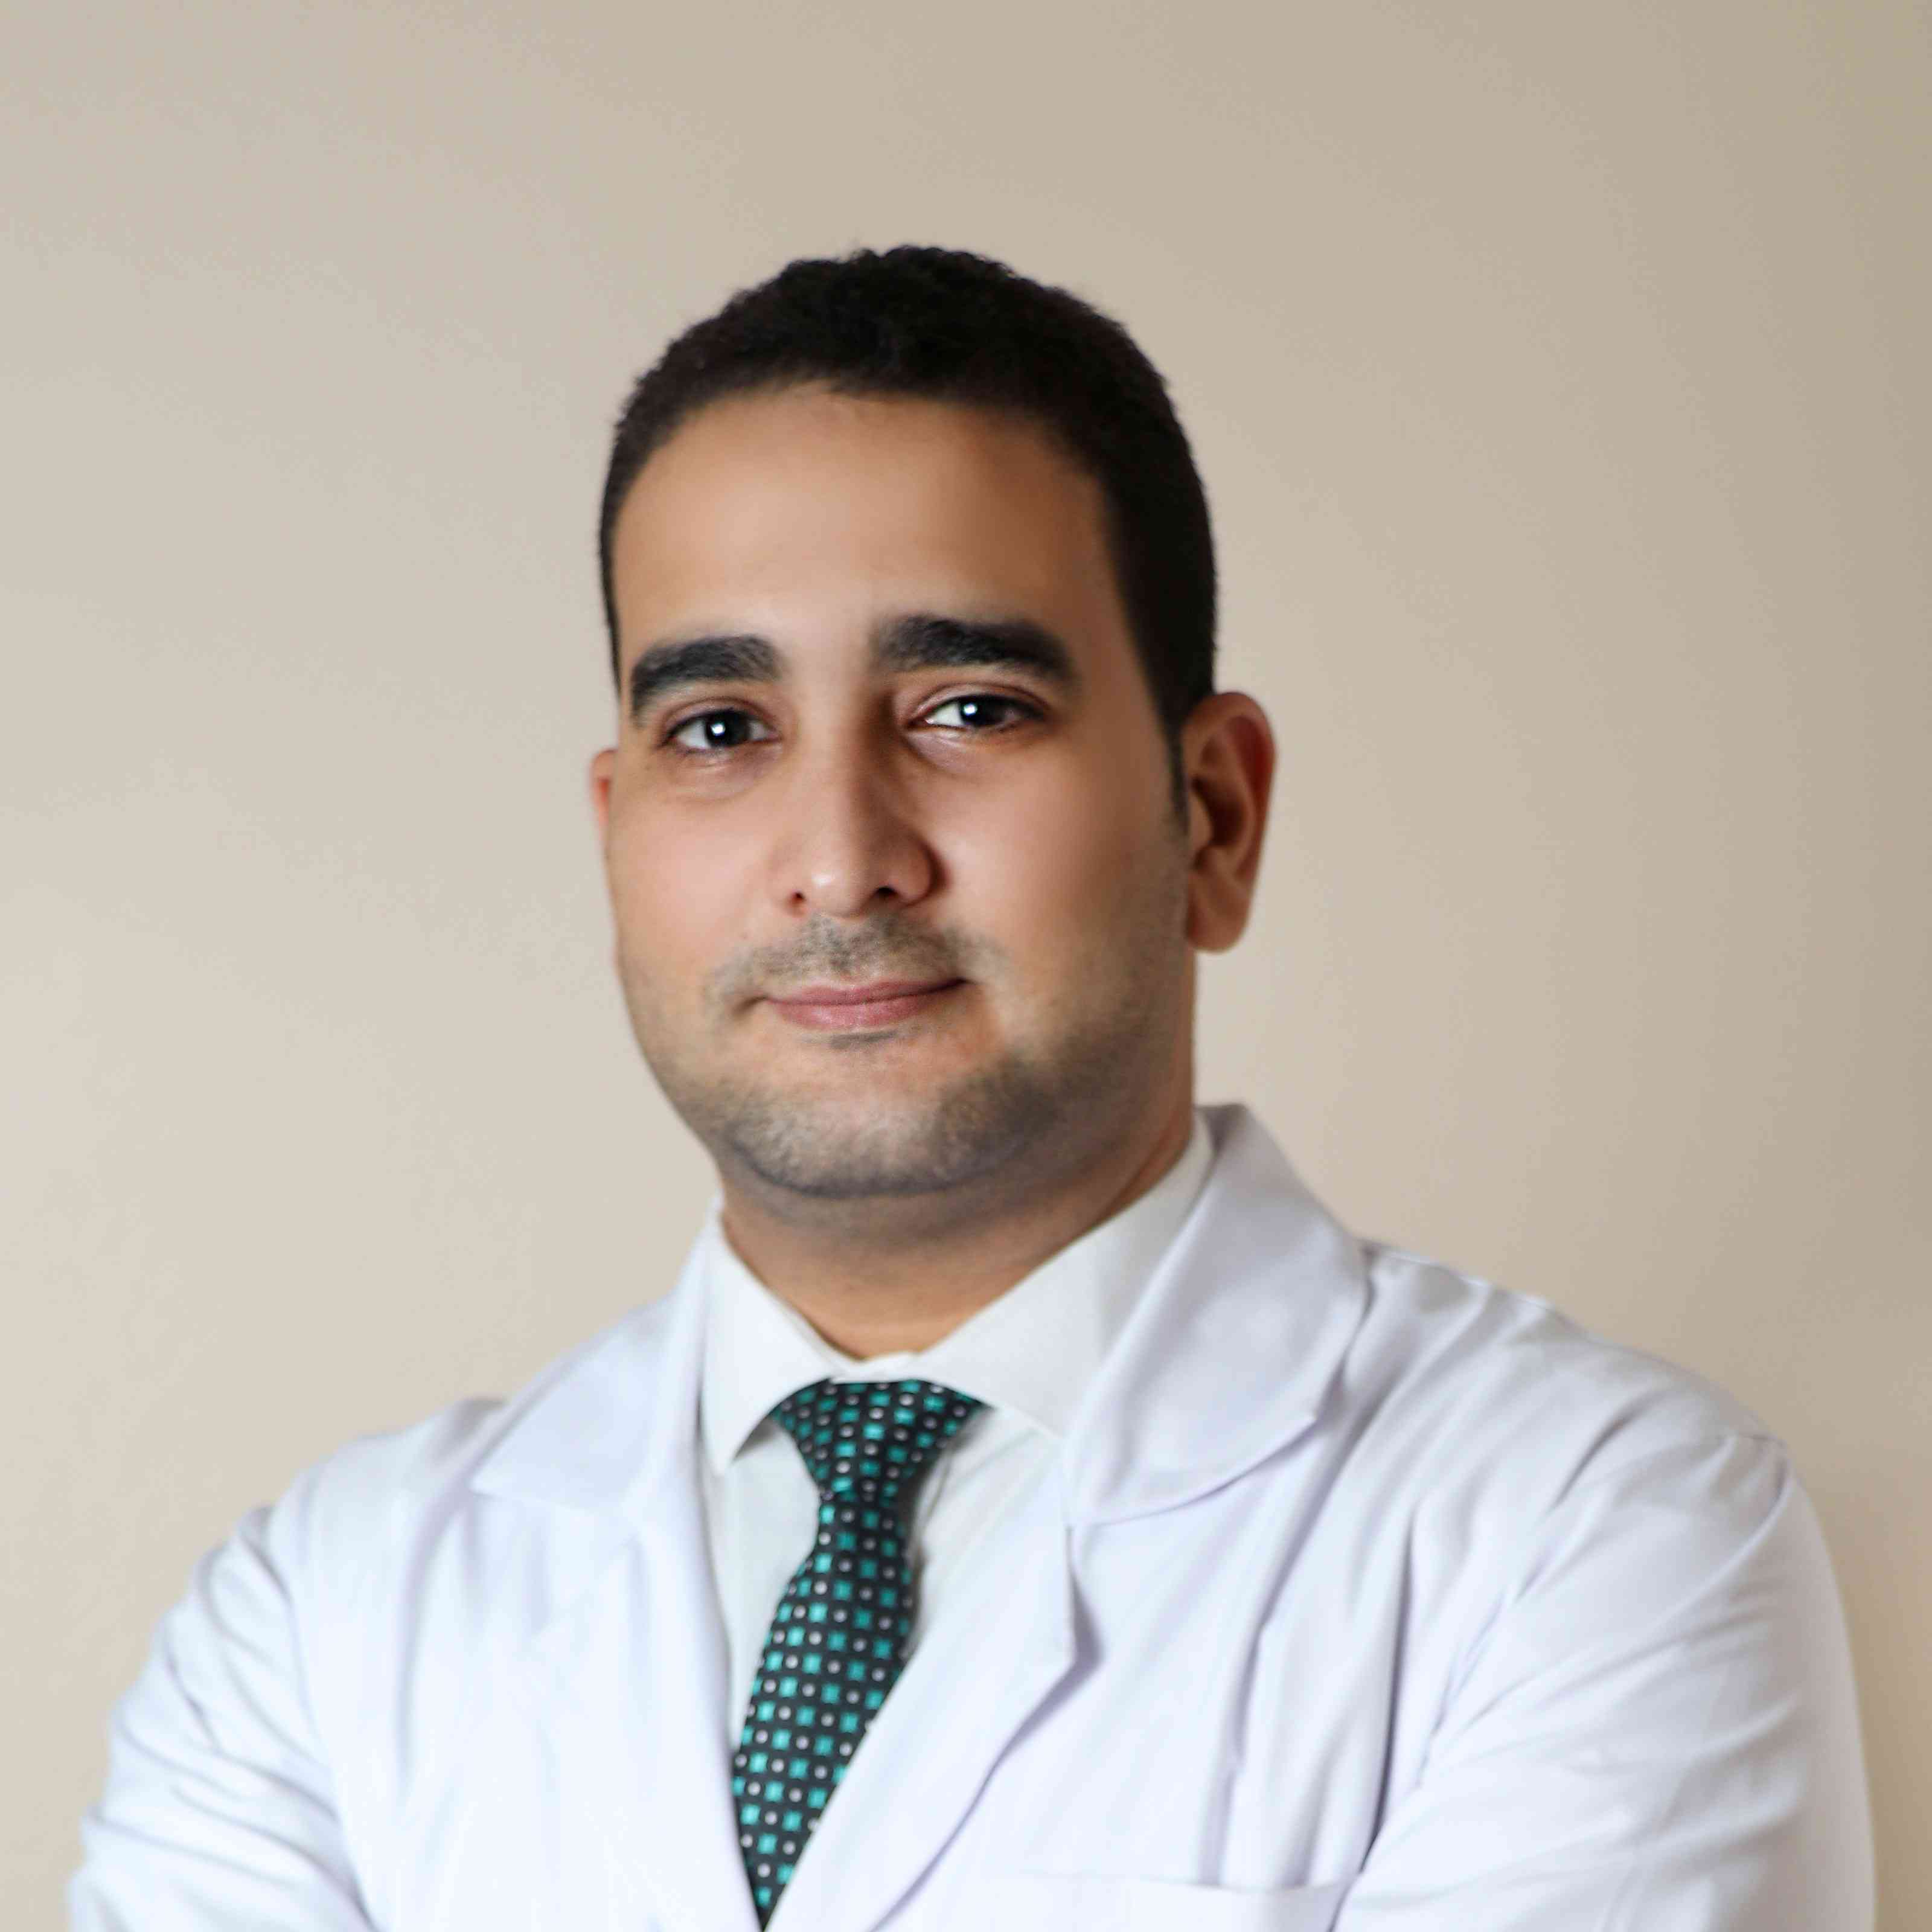 Dr. Mostafa Al Azaizy